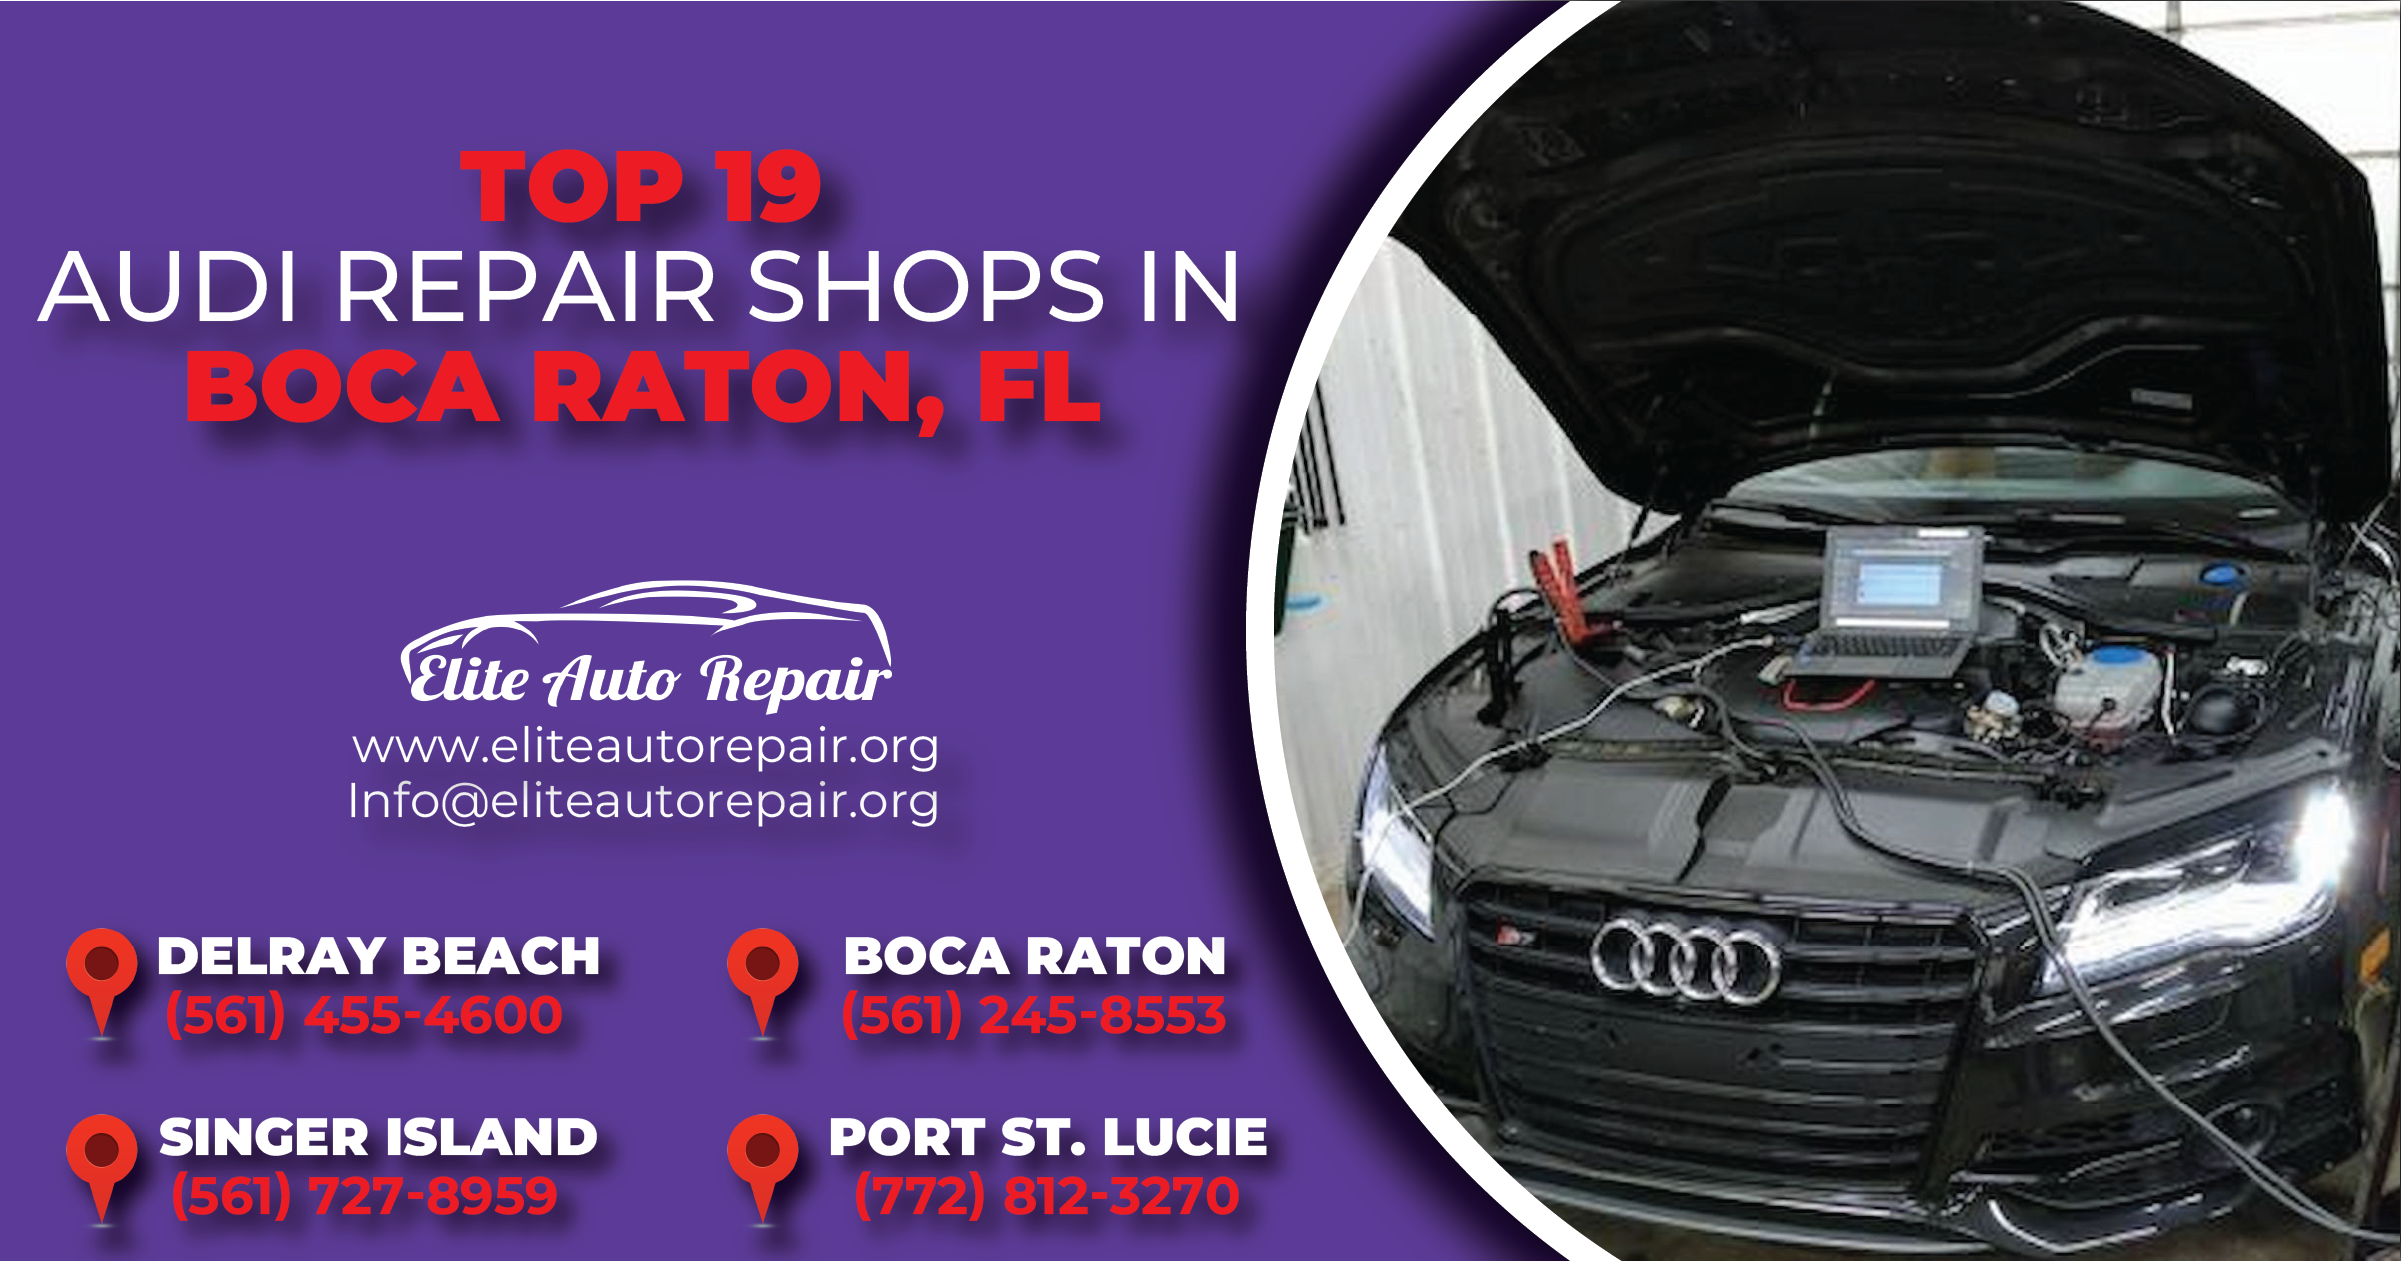 Top 19 Audi Repair Shops in Boca Raton, FL